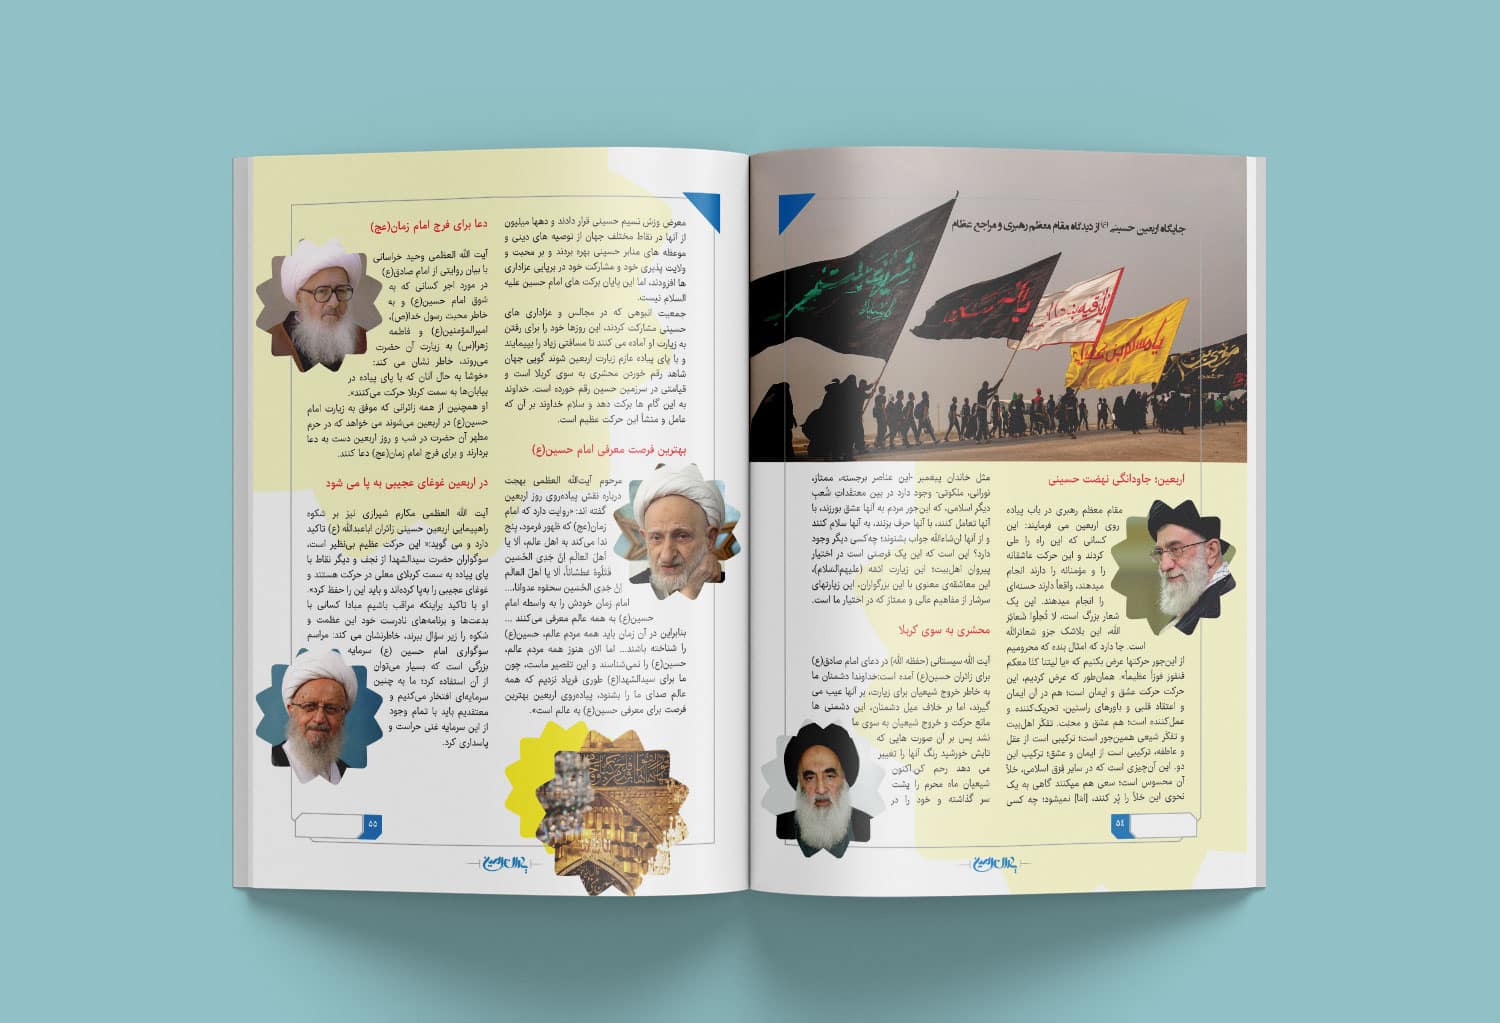 نمونه کار طراحی و صفحه آرایی مجله مذهبی با مضمون های محرم و اربعین و کربلا